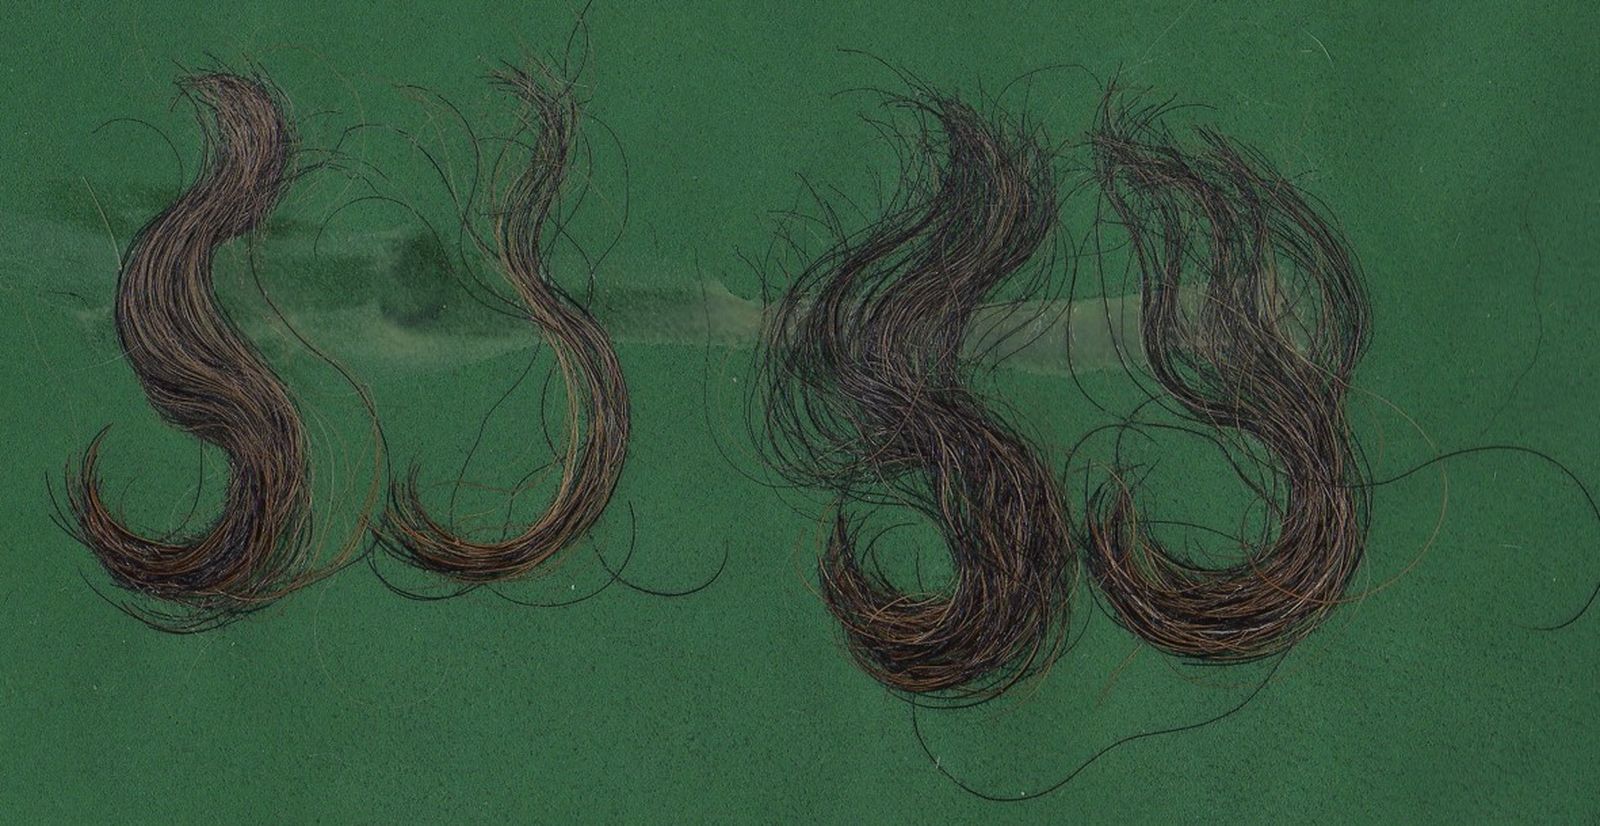 Haare vom Rauhaardackel auf grünem Untergrund mit starker Lockenbildung